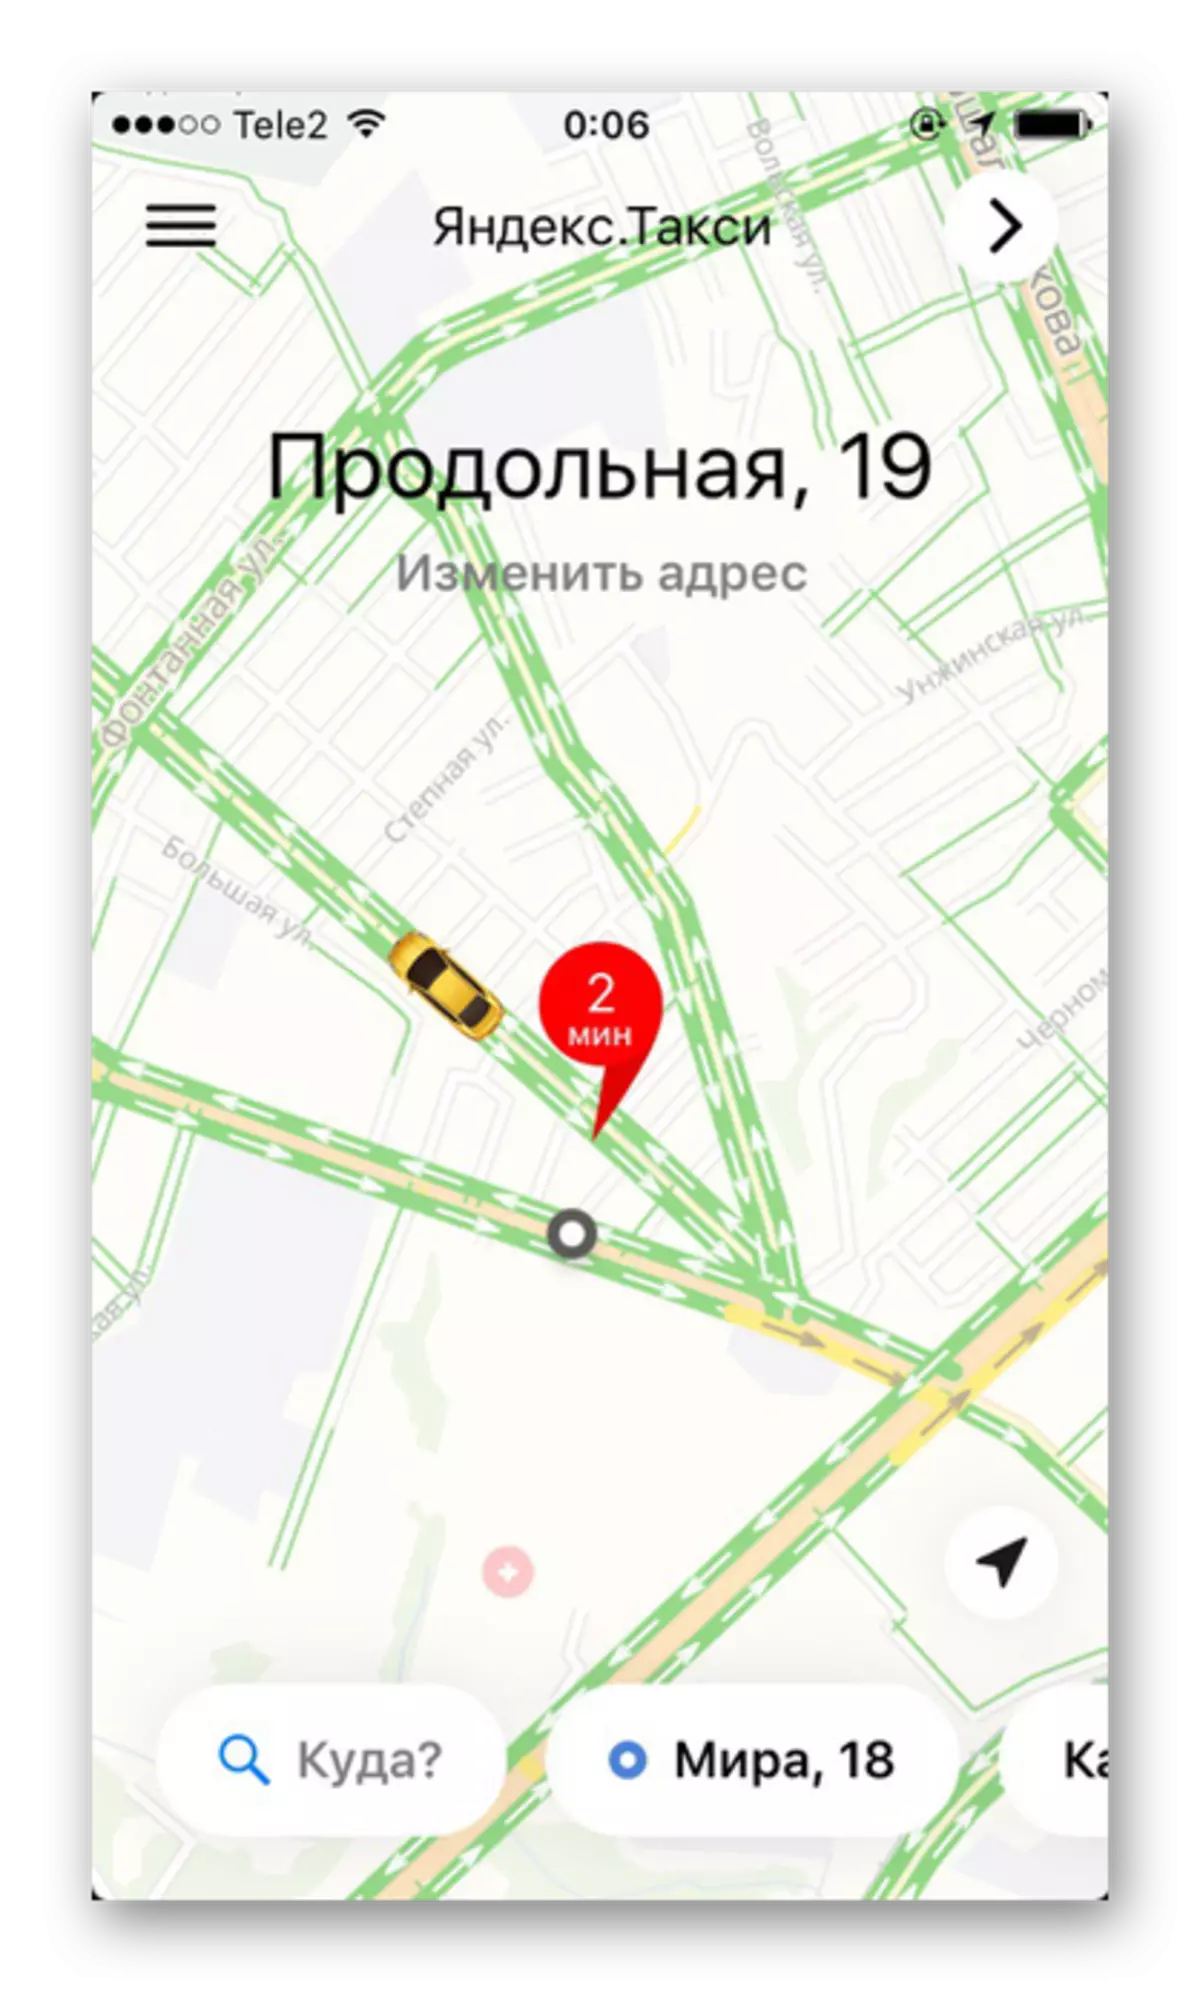 ഐഫോണിലെ Yandex.Taxi അപ്ലിക്കേഷനിൽ ട്രാഫിക് ജാമുകളും റോഡ് ജോലിഭാരവും പ്രാപ്തമാക്കുന്നു